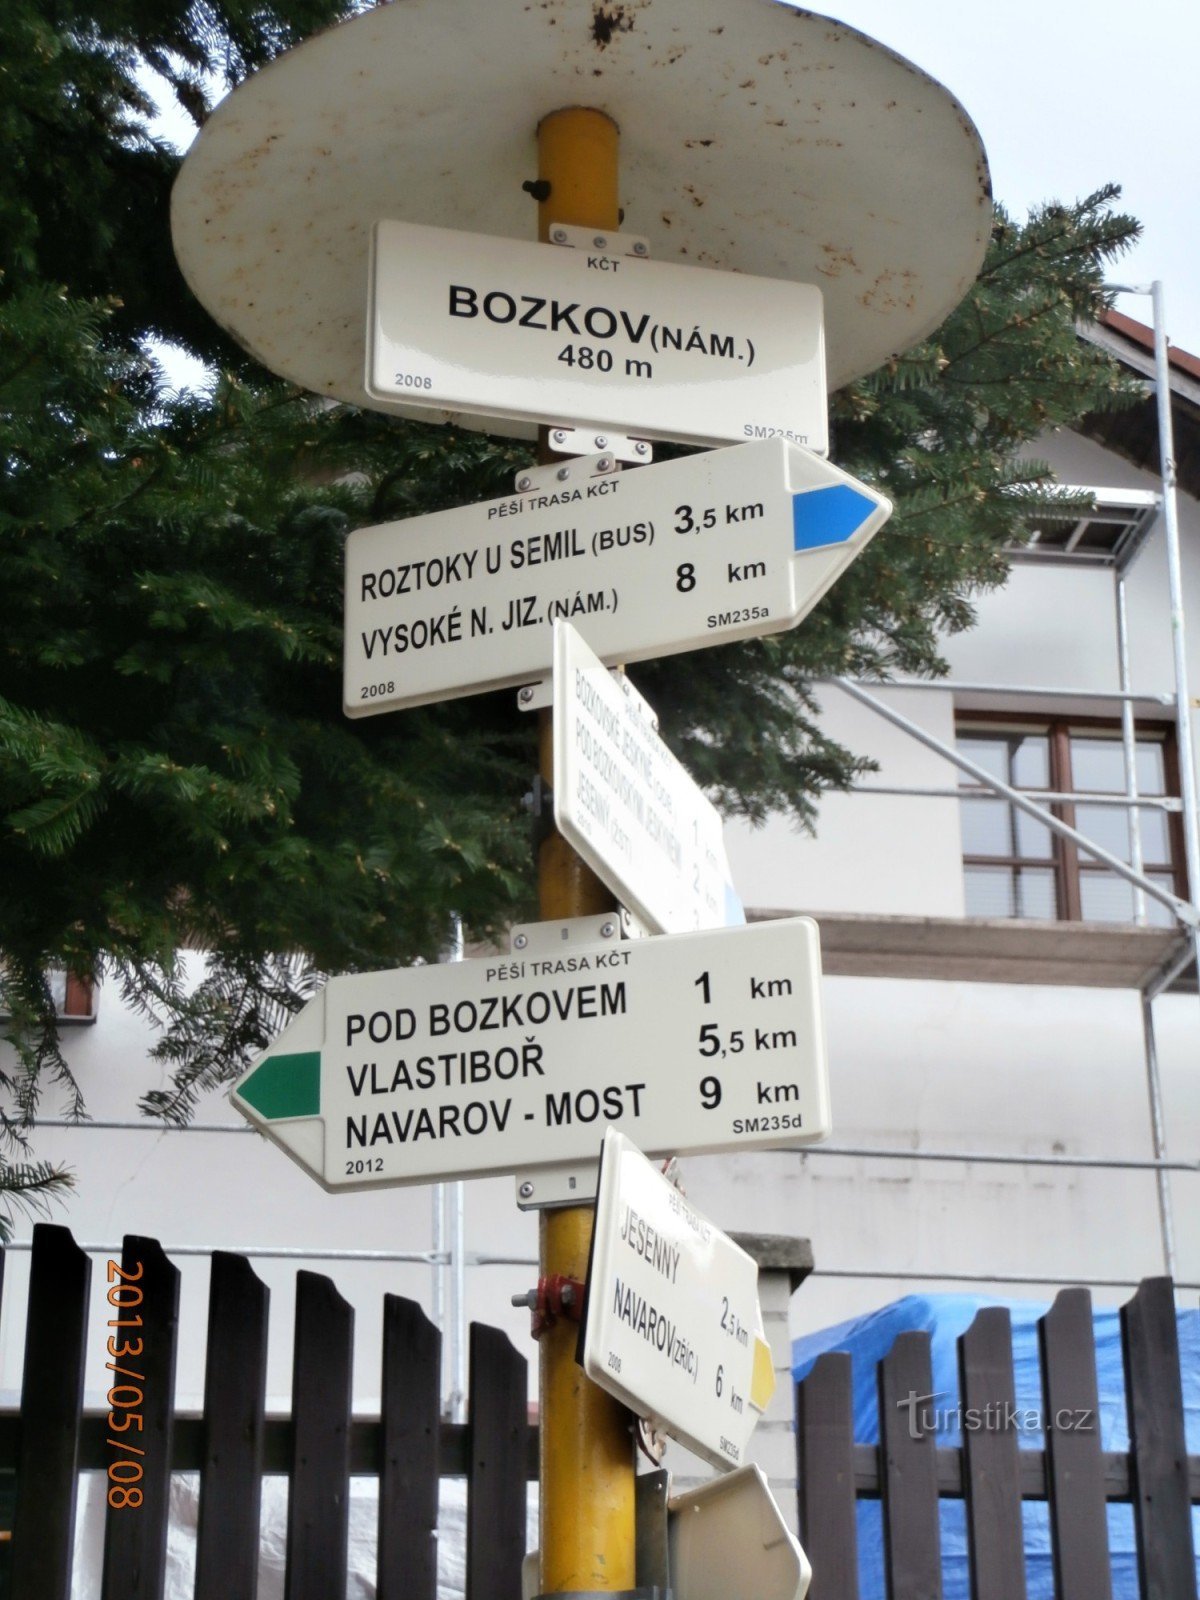 Bozkovon keresztül Návarovba